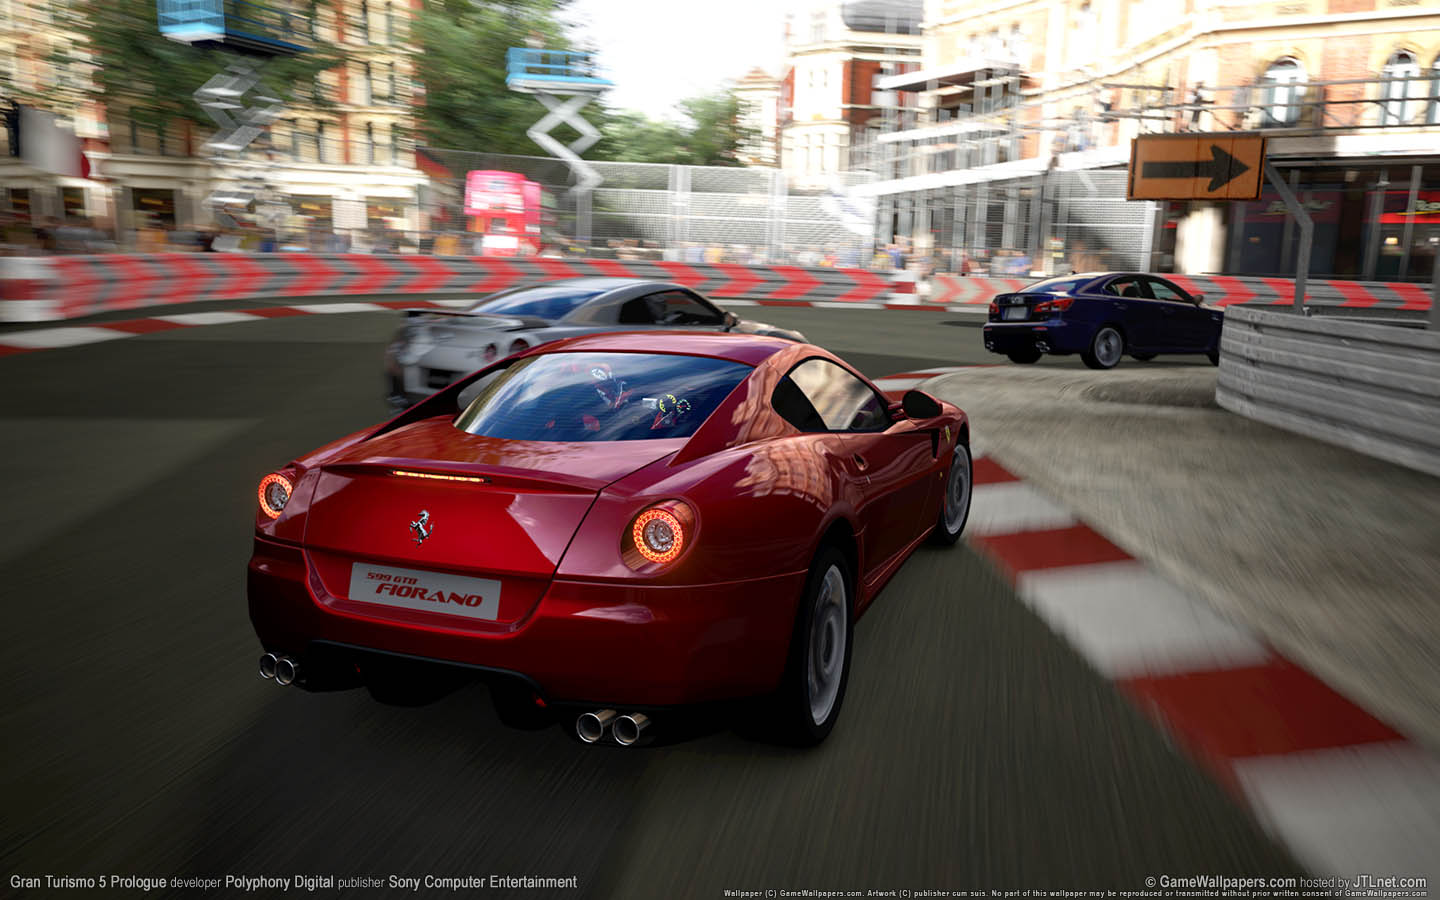 Gran Turismo 5 Prologue fond d'cran 02 1440x900